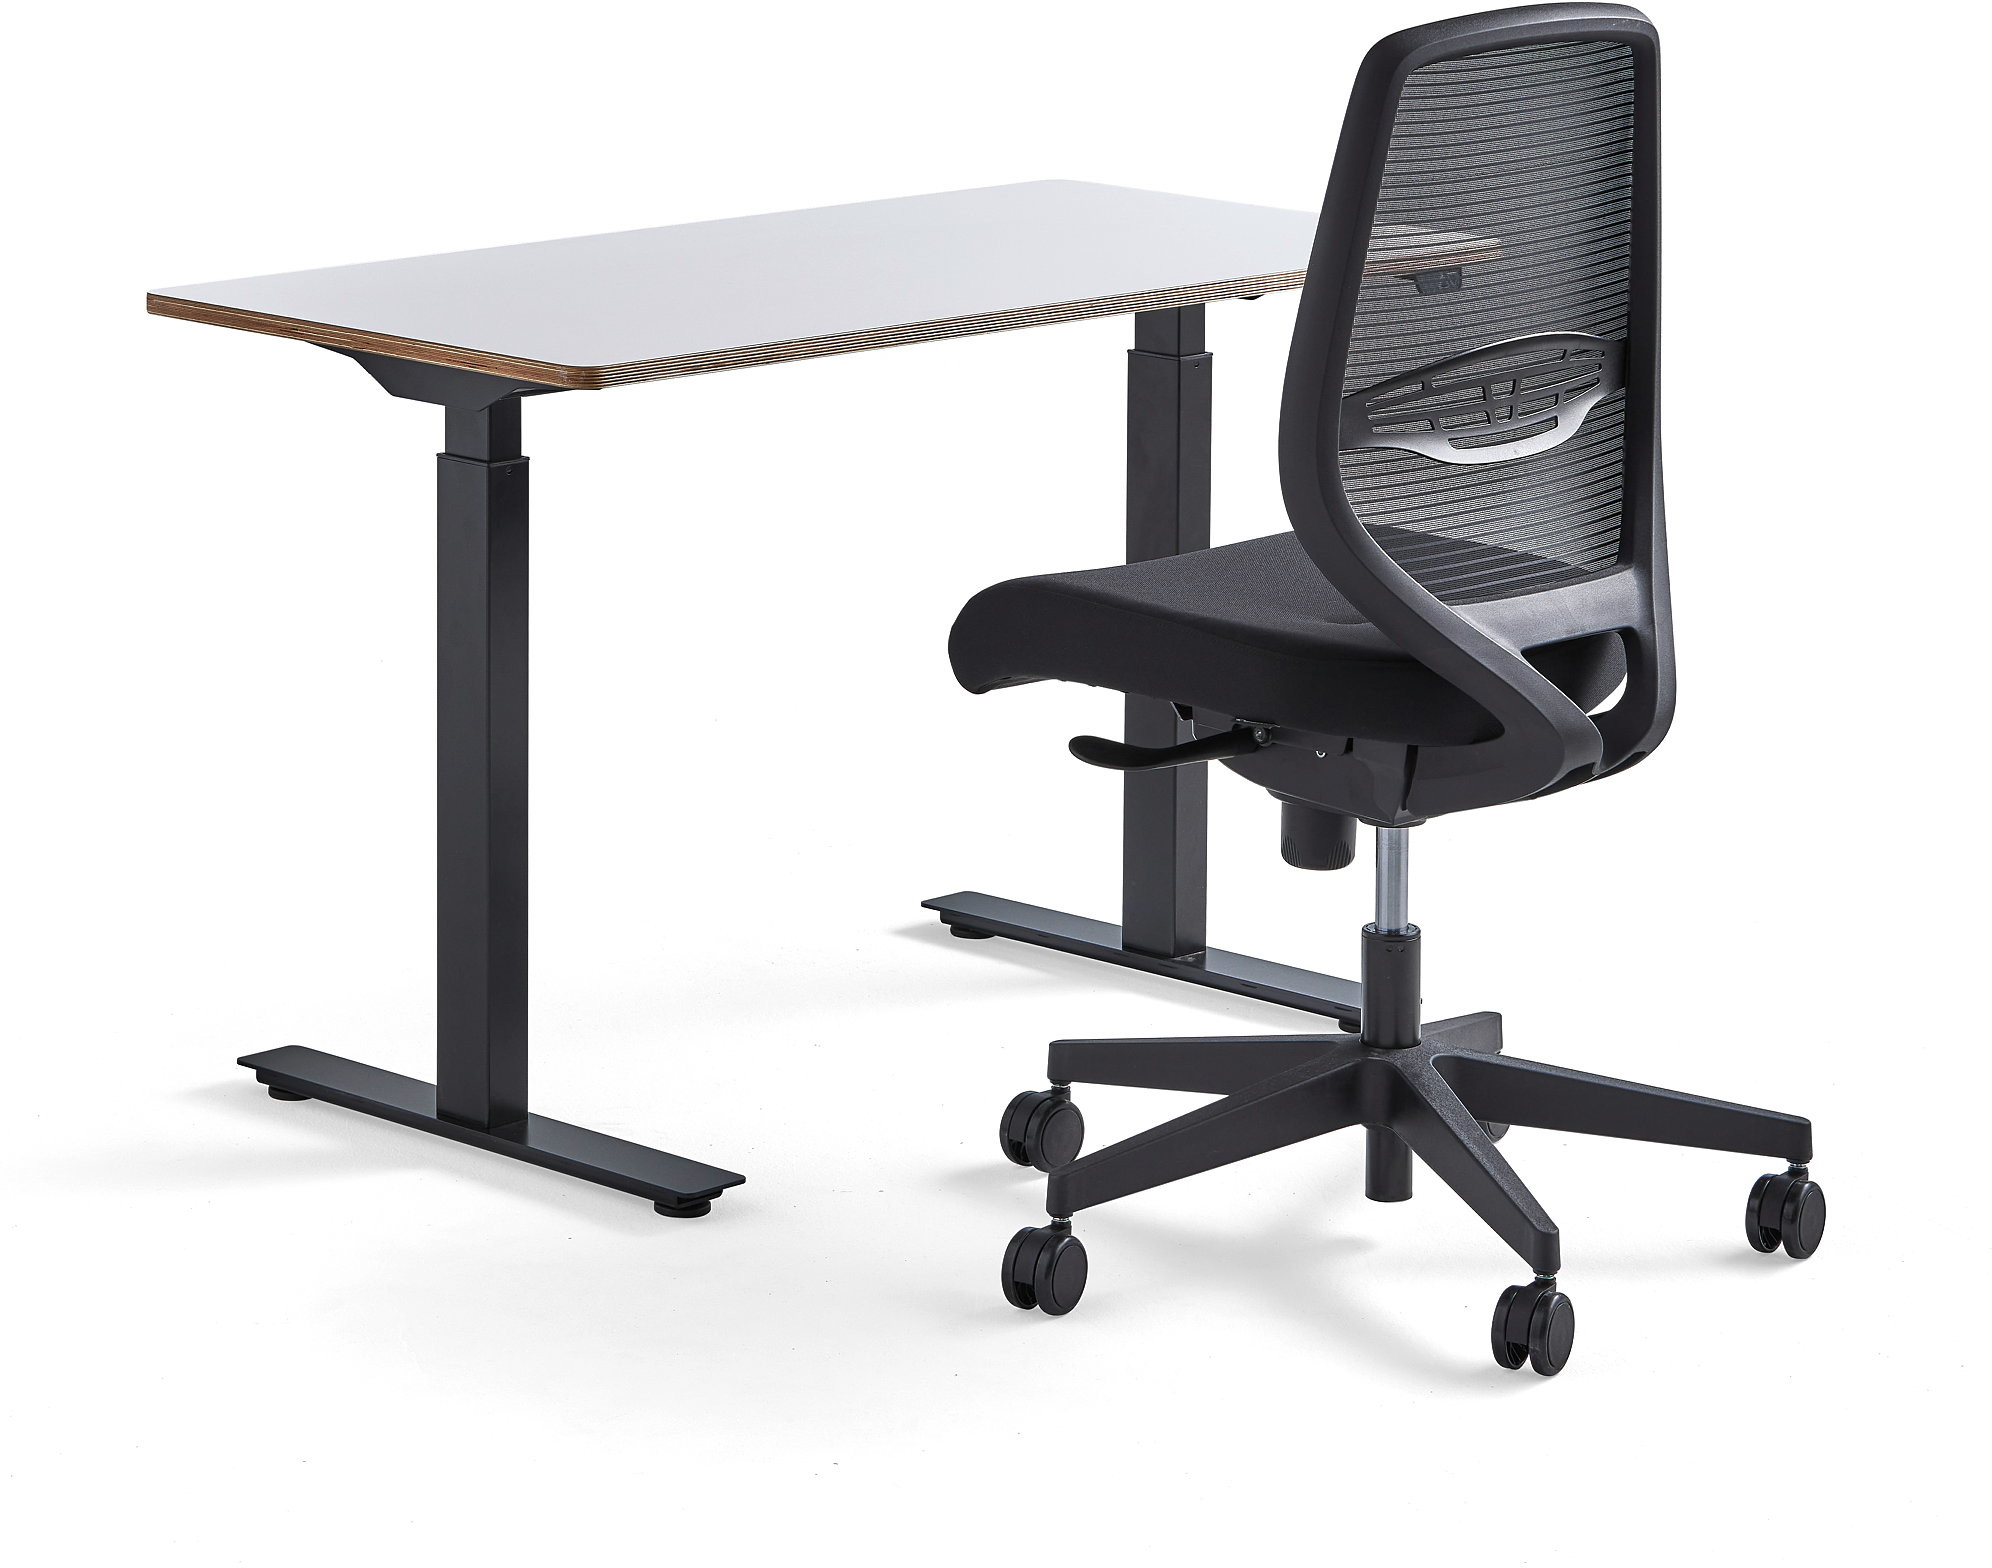 AJ Produkty Zestaw mebli NOVUS + MARLOW, 1 białe biurko i 1 krzesło